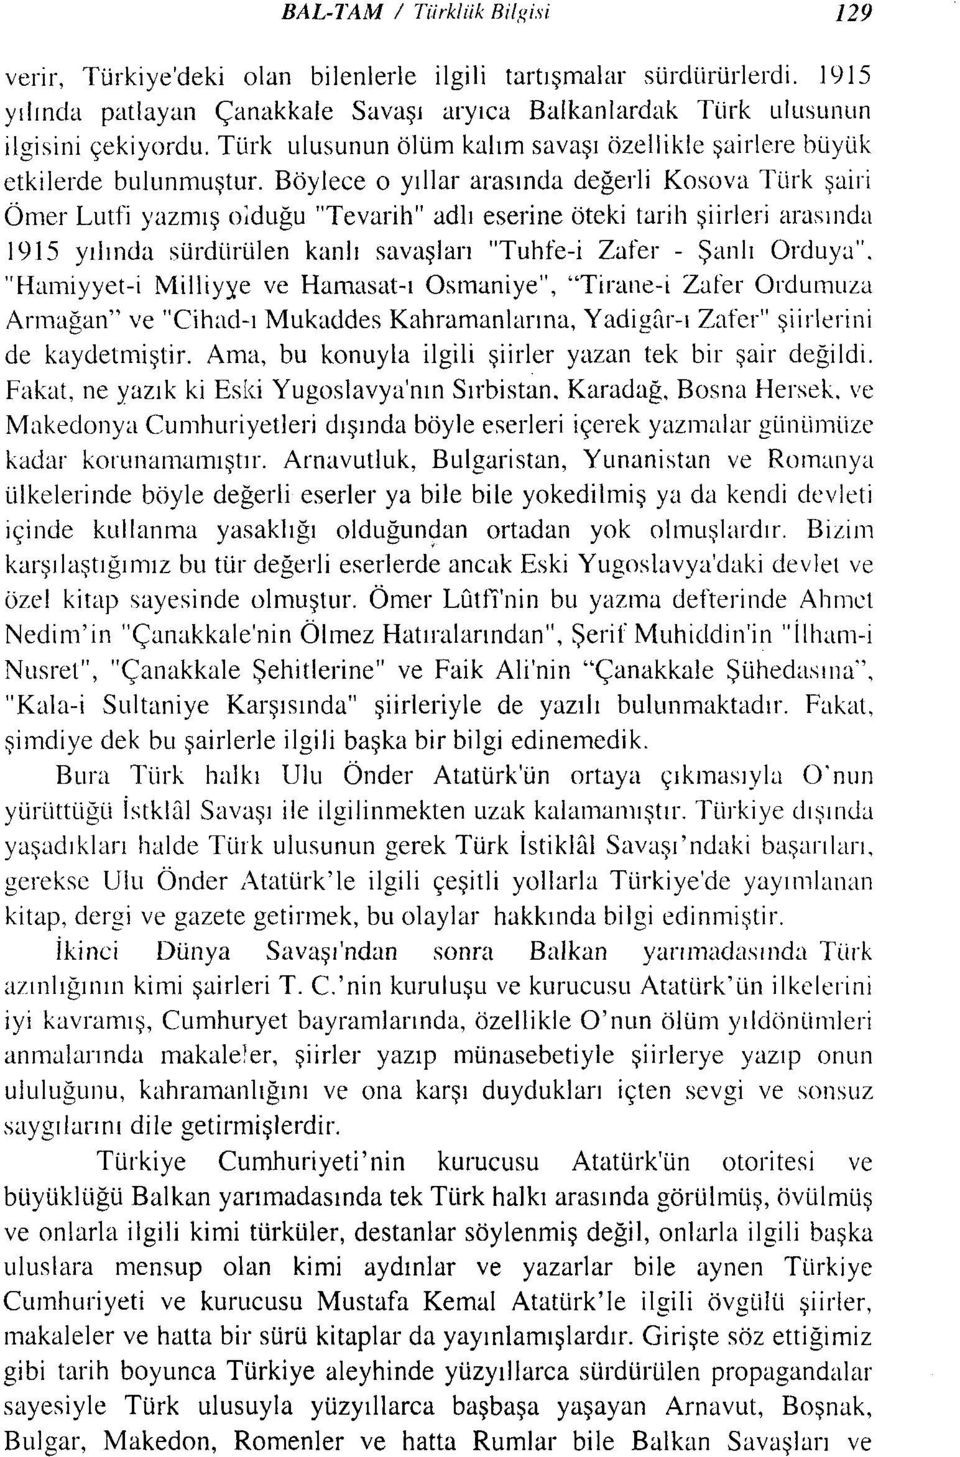 Böylece o yıllar arasında değerli Kosova Türk şairi Ömer Lutfi yazmış olduğu "Tevarih" adlı eserine öteki tarih şiirleri arasında 191 S yılında sürdürülen kanlı savaşları "Tuhfe-i Zafer - Şanlı